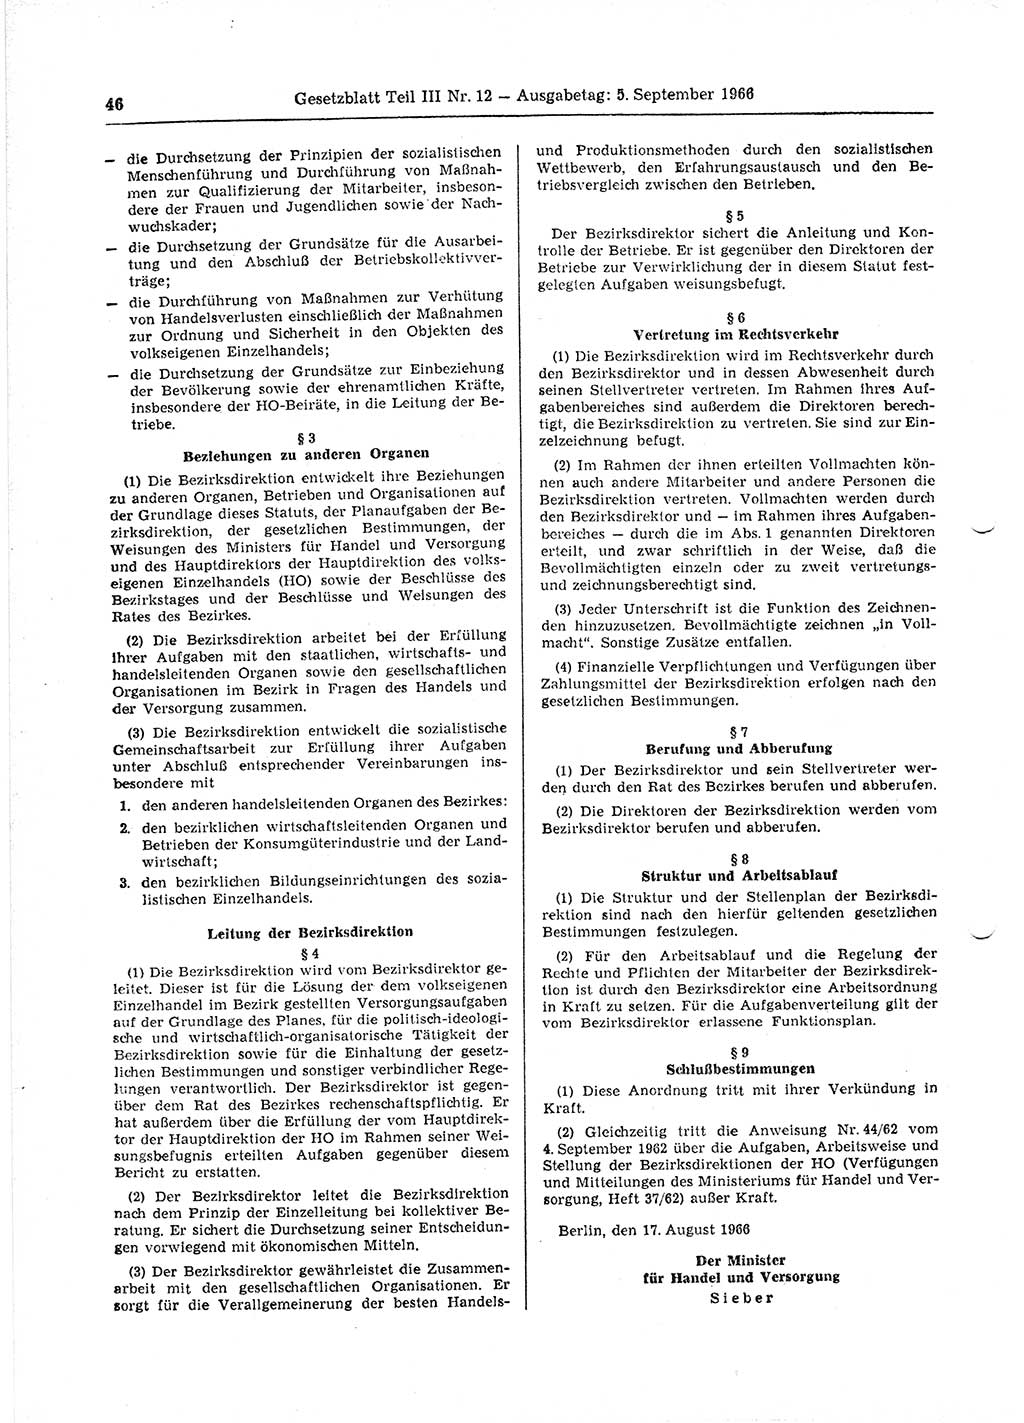 Gesetzblatt (GBl.) der Deutschen Demokratischen Republik (DDR) Teil ⅠⅠⅠ 1966, Seite 46 (GBl. DDR ⅠⅠⅠ 1966, S. 46)